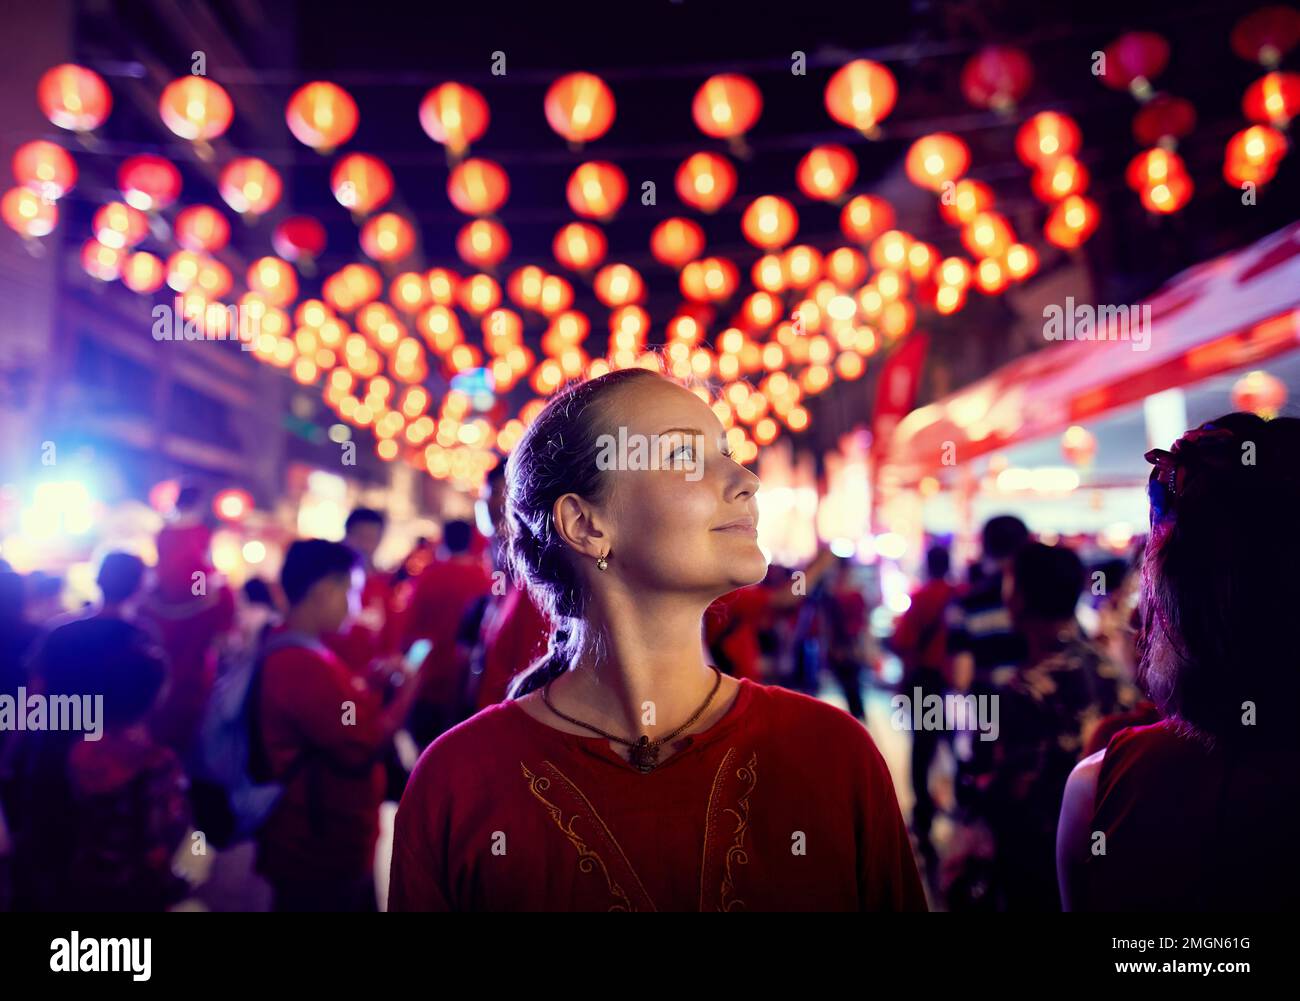 Femme touristique en portrait de chemise rouge près de la décoration du marché de nuit avec des lanternes rouges pour le nouvel an chinois à Bangkok Chinatown en Thaïlande Banque D'Images